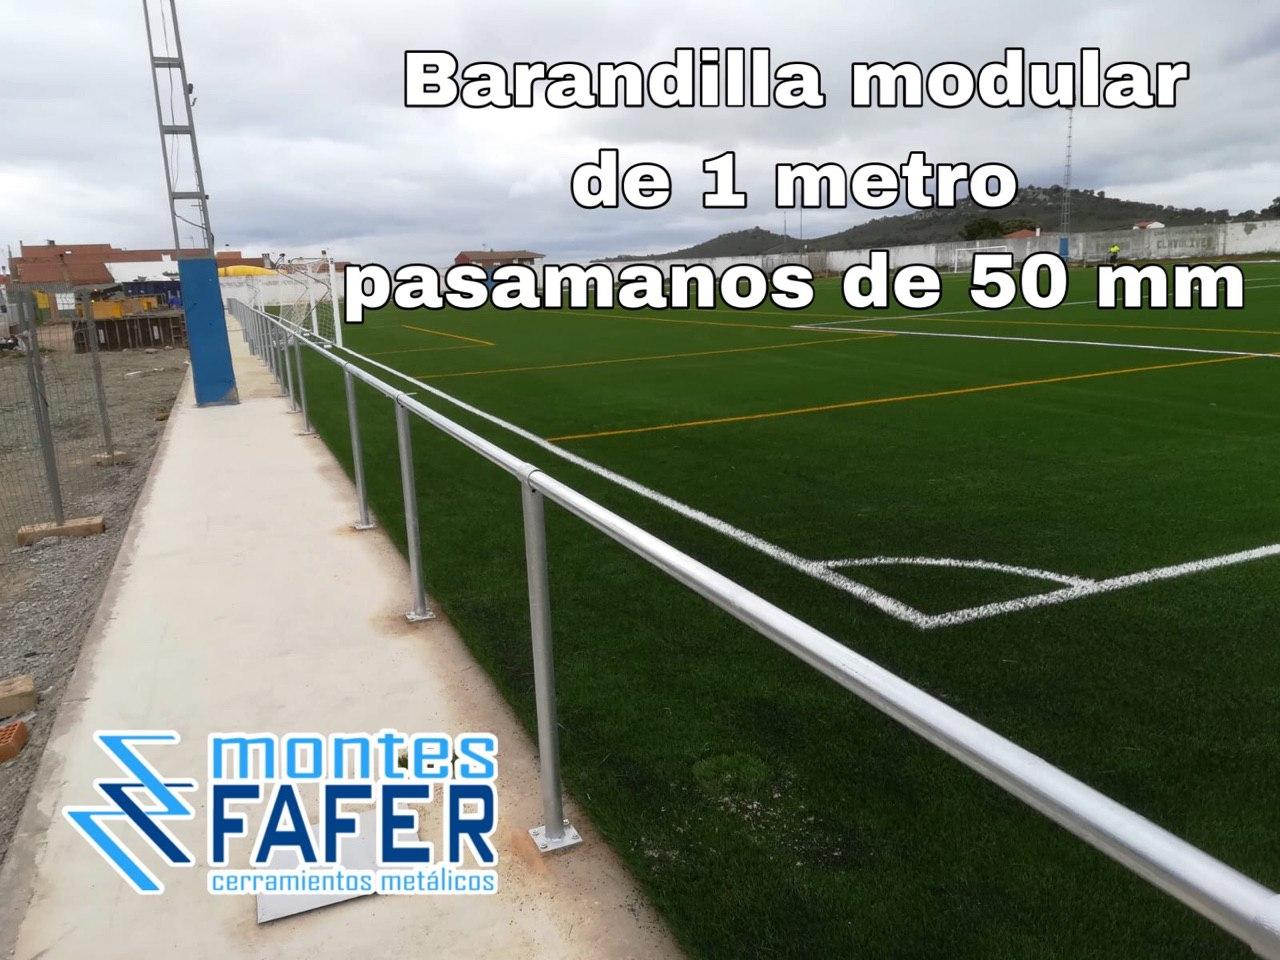 Barandilla modular de 1 metro pasamanos 50 mm campo de futbol MontesFafer